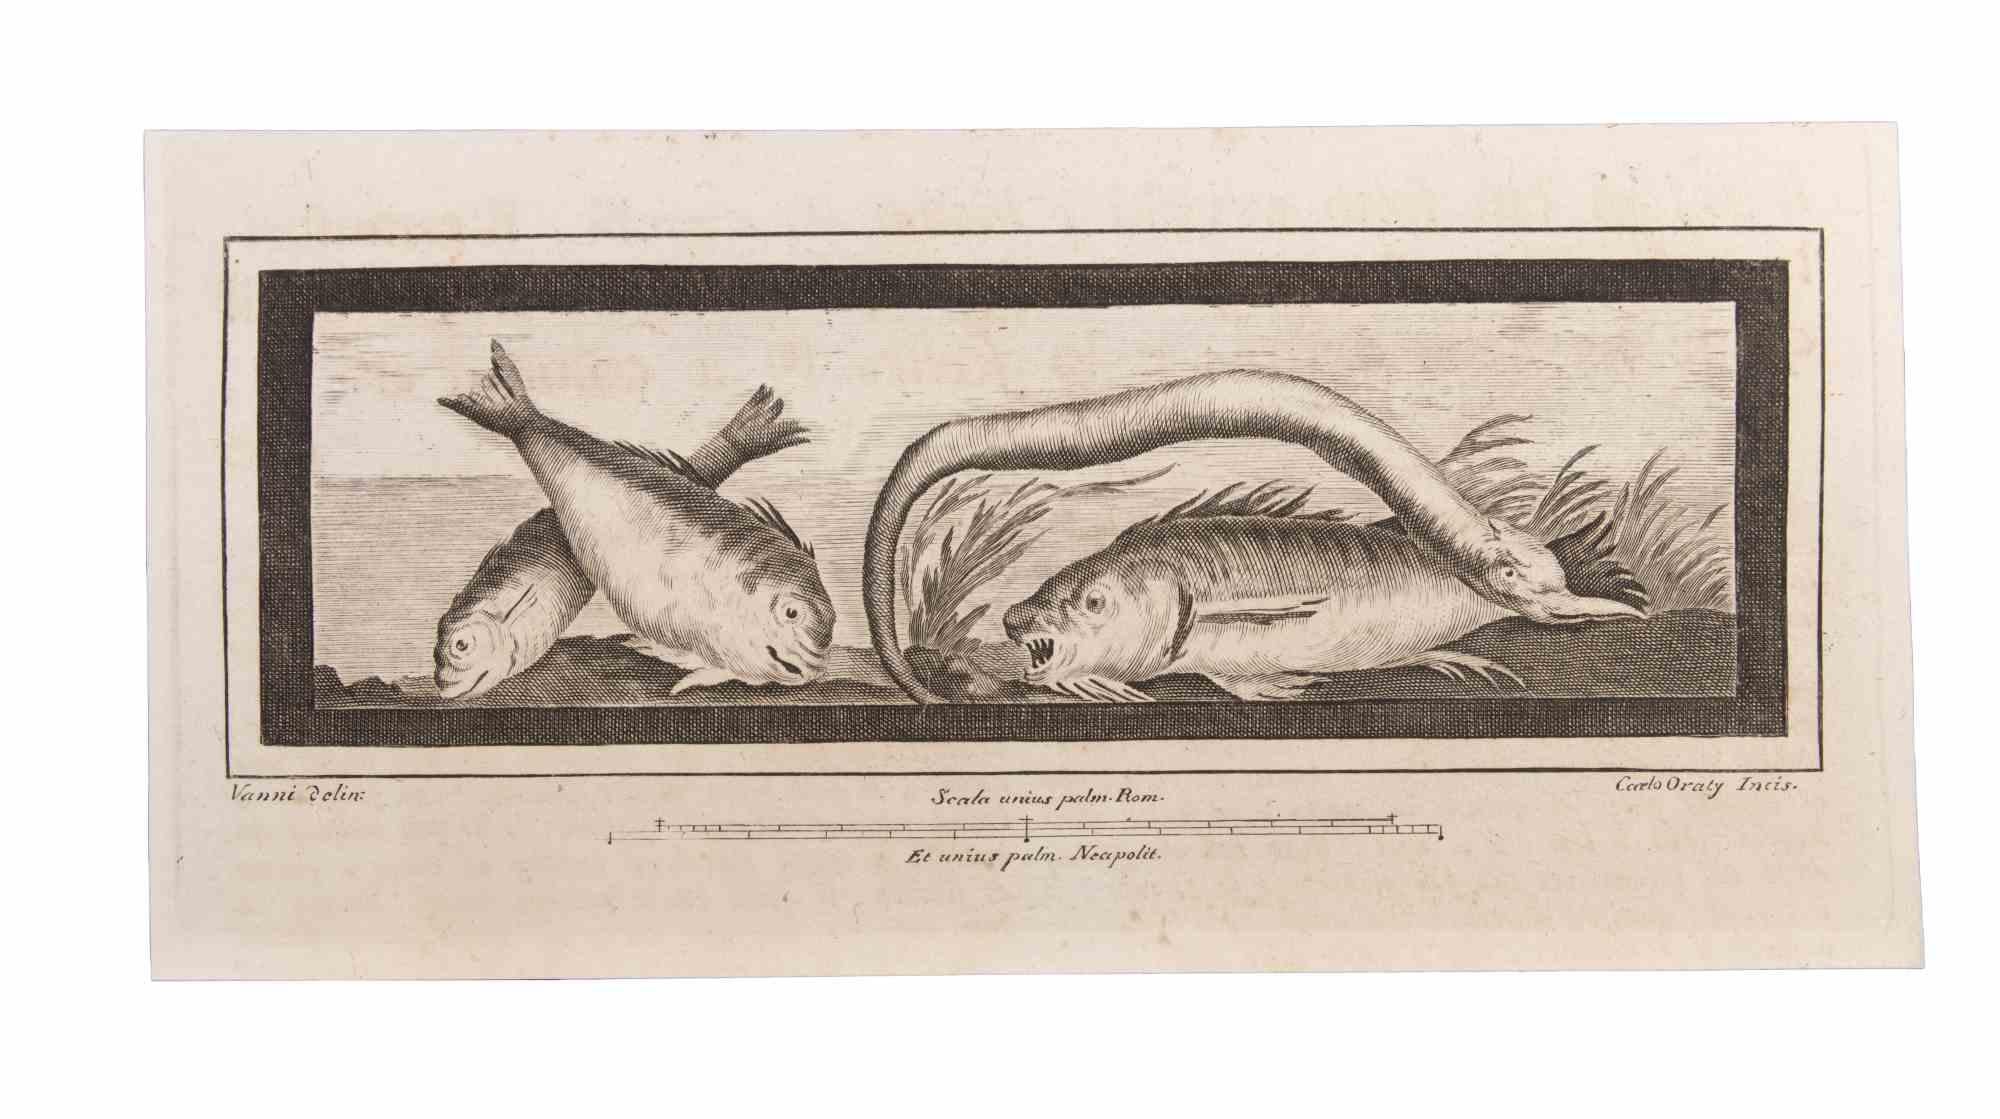 Decoration With Animals ist eine Radierung von Carlo Oraty (18. Jahrhundert).

Die Radierung gehört zu der Druckserie "Antiquities of Herculaneum Exposed" (Originaltitel: "Le Antichità di Ercolano Esposte"), einem achtbändigen Band mit Stichen von